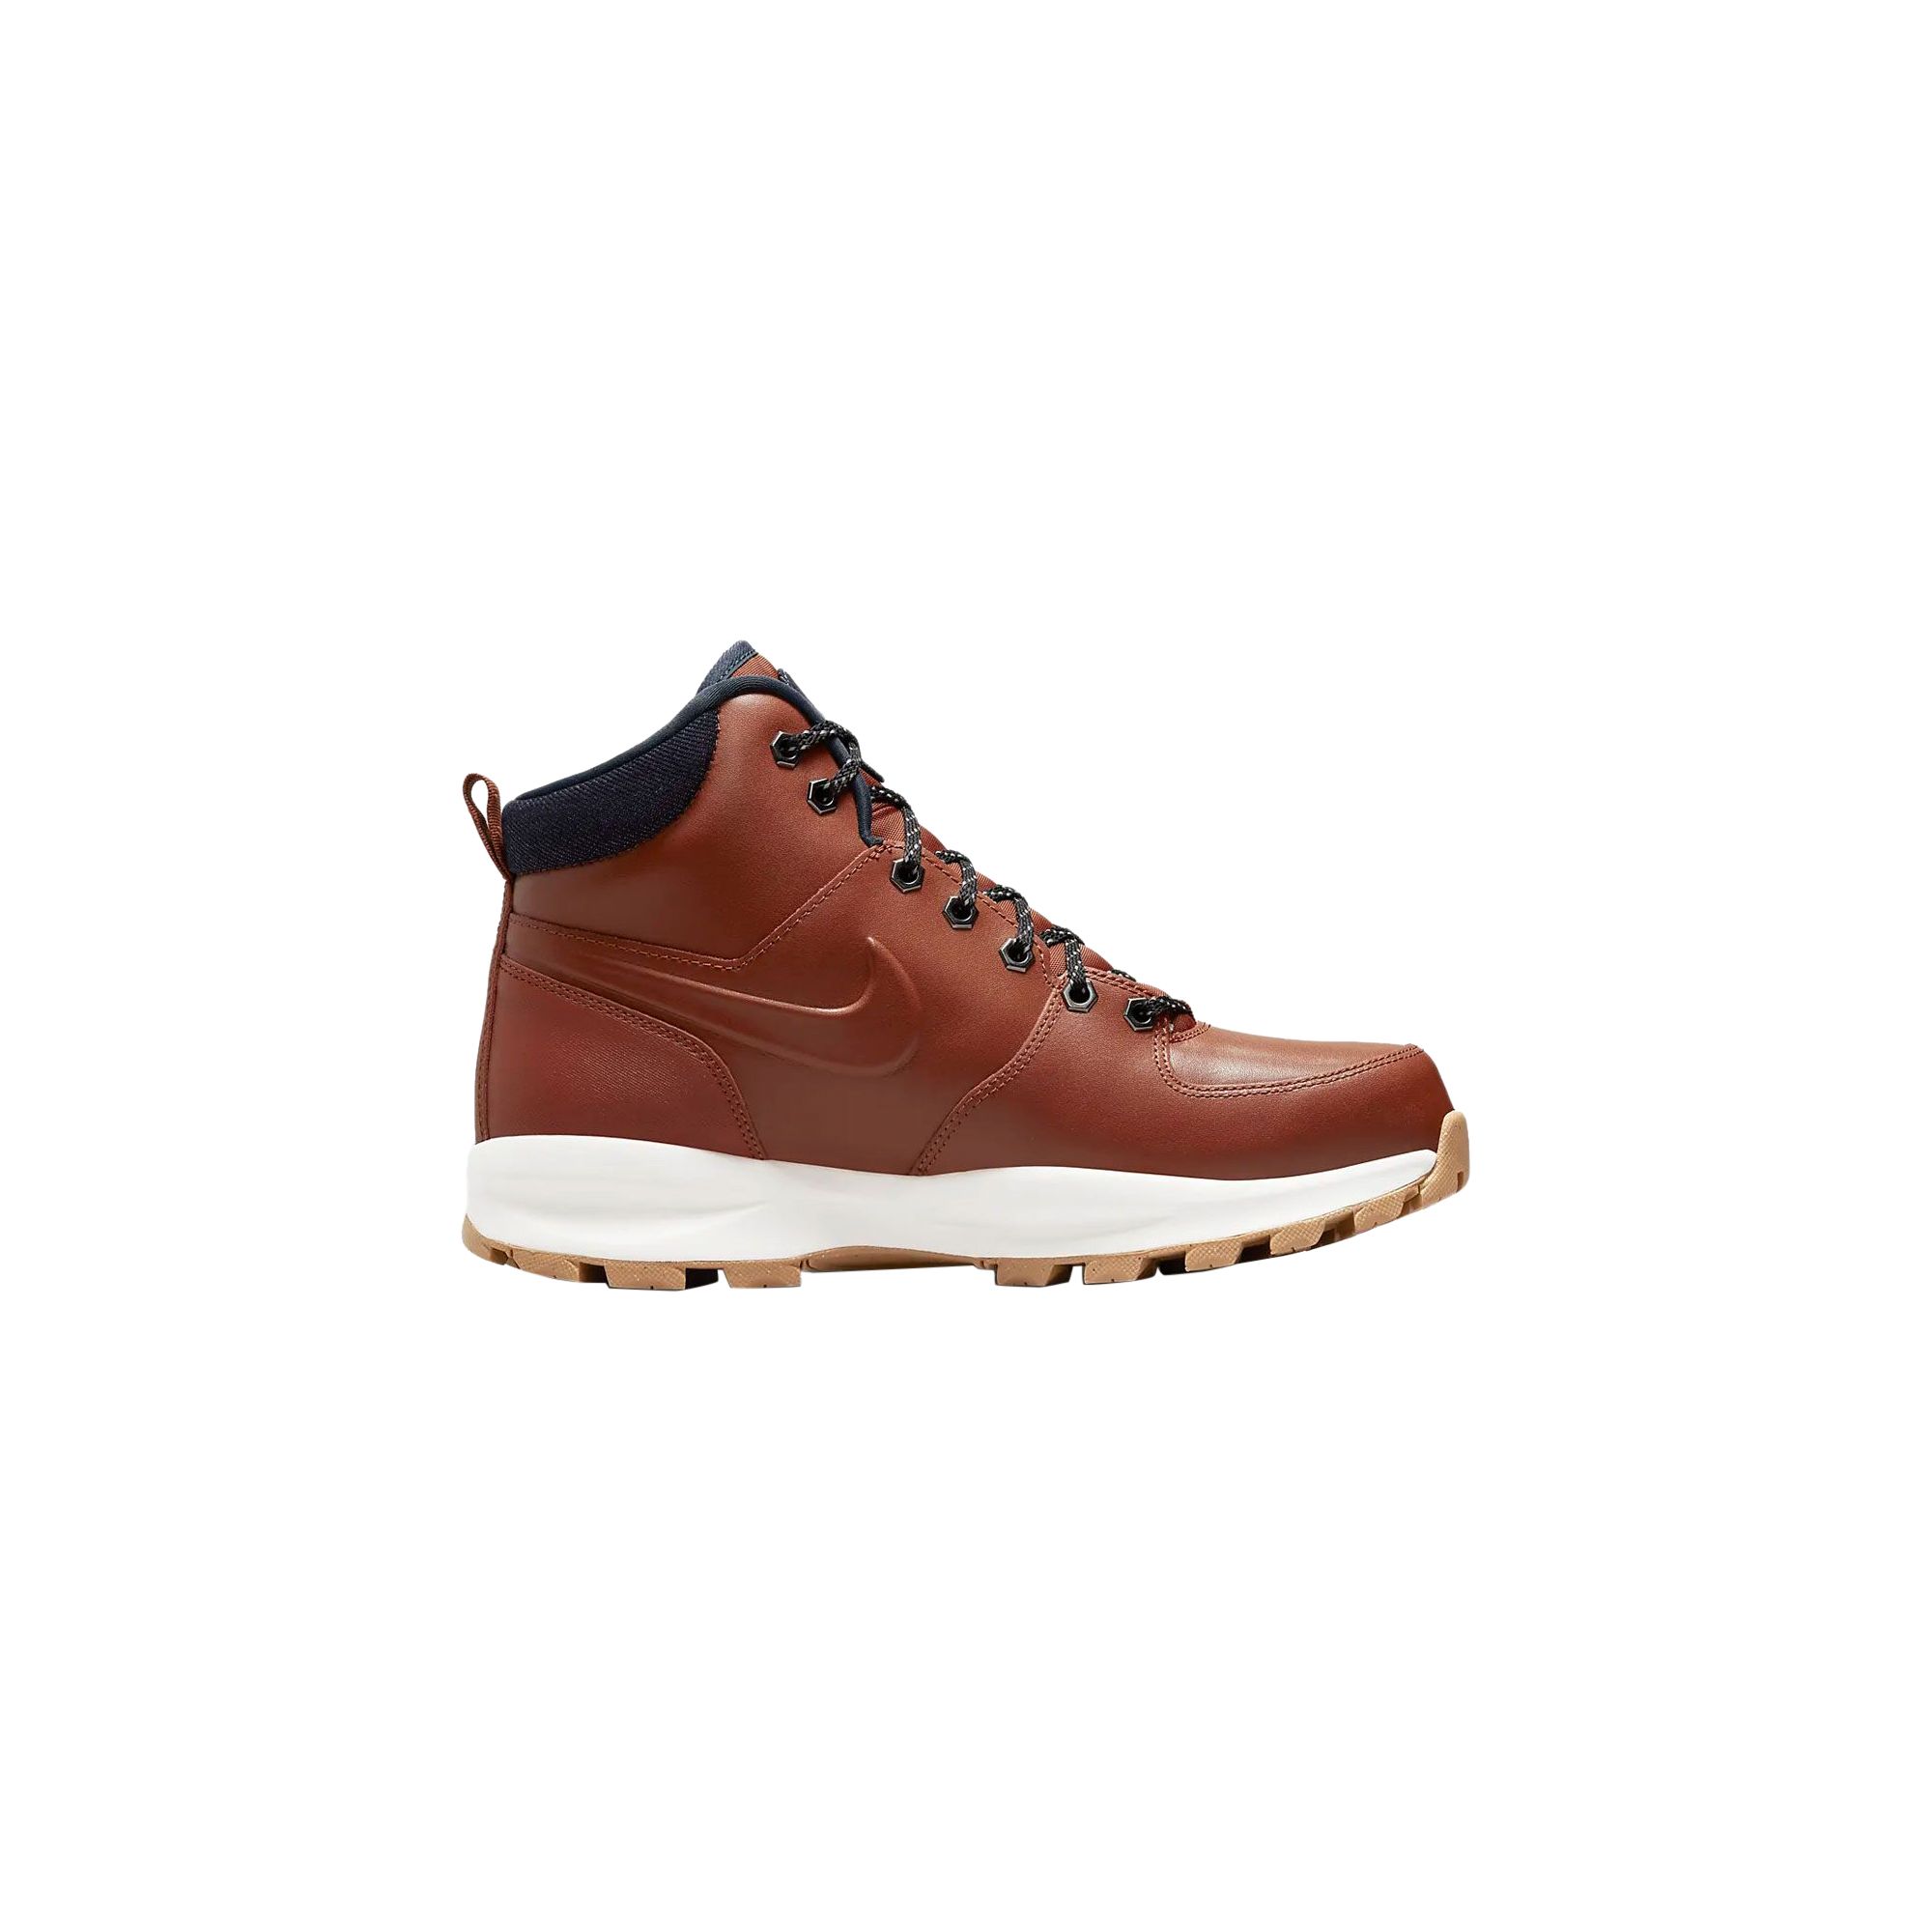 Manoa Leather Se Nike - 3165920